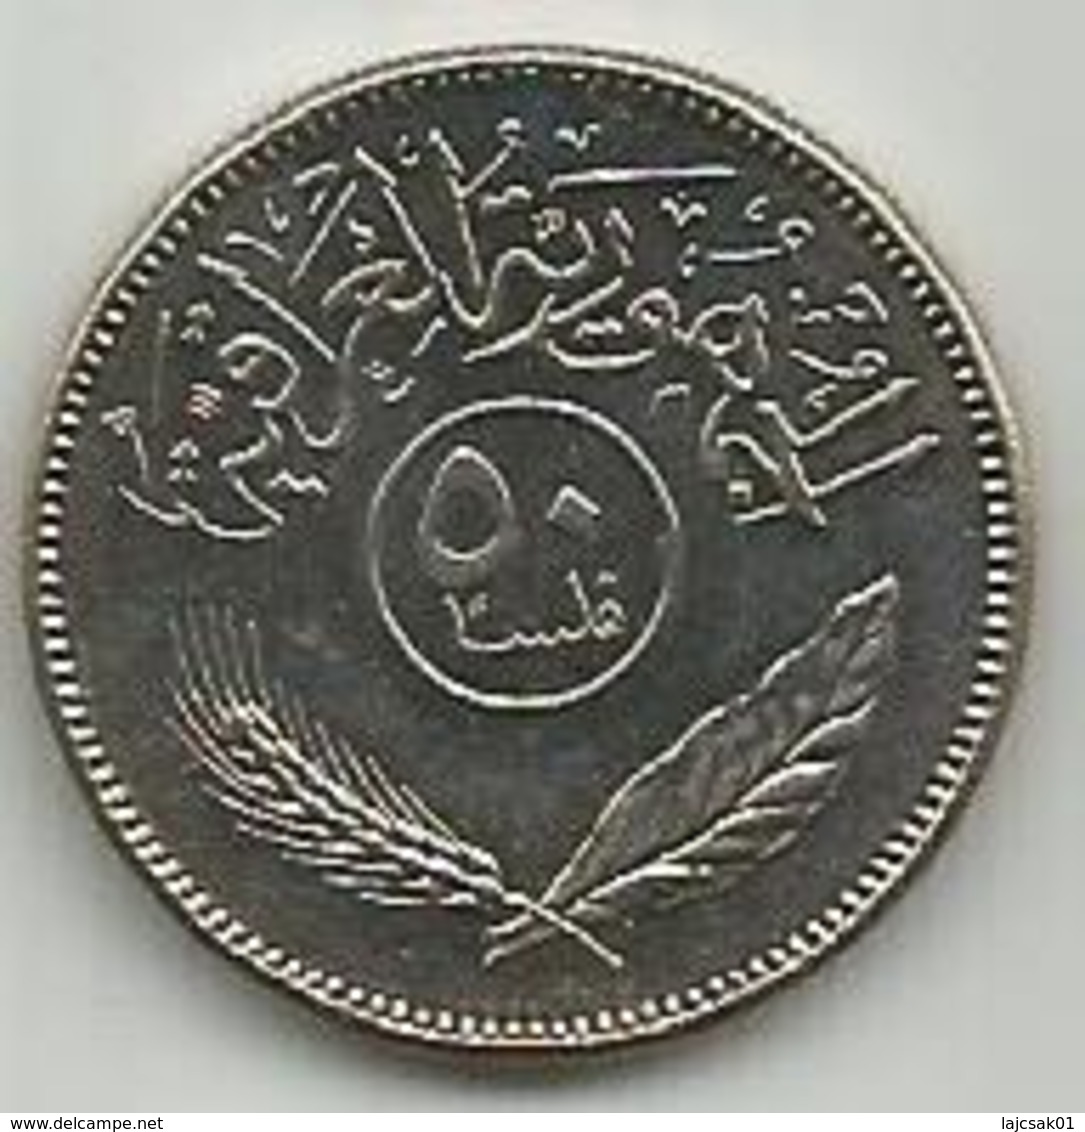 Iraq 50 Fils 1981. - Iraq